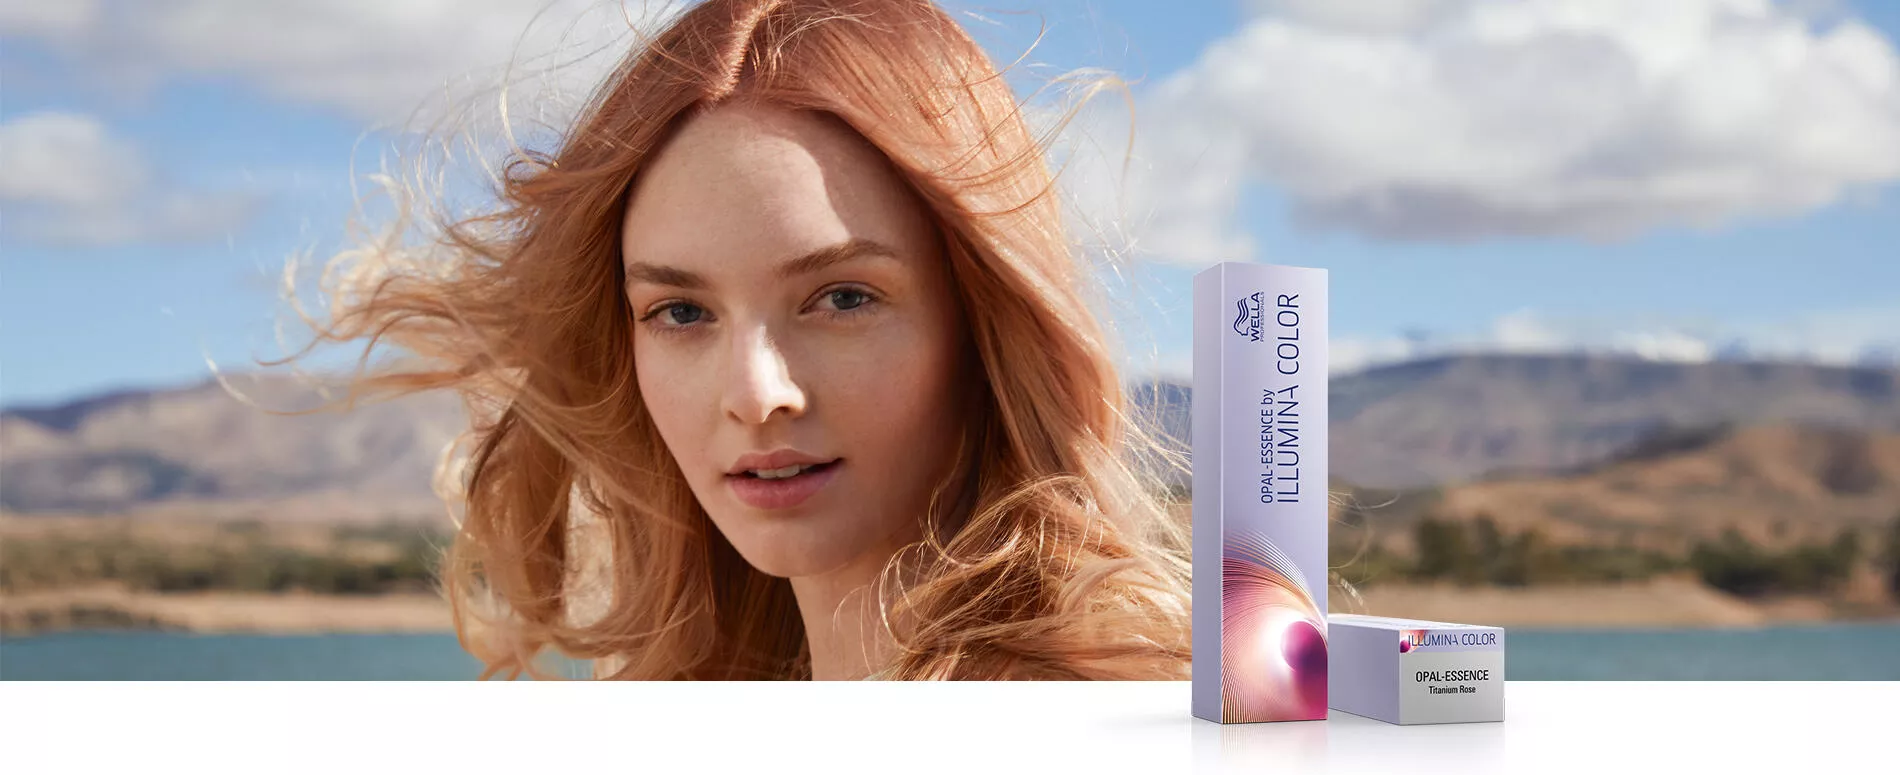 Donna dai capelli color Titanium Rose trattati con Opal-Essence by Illumina Color